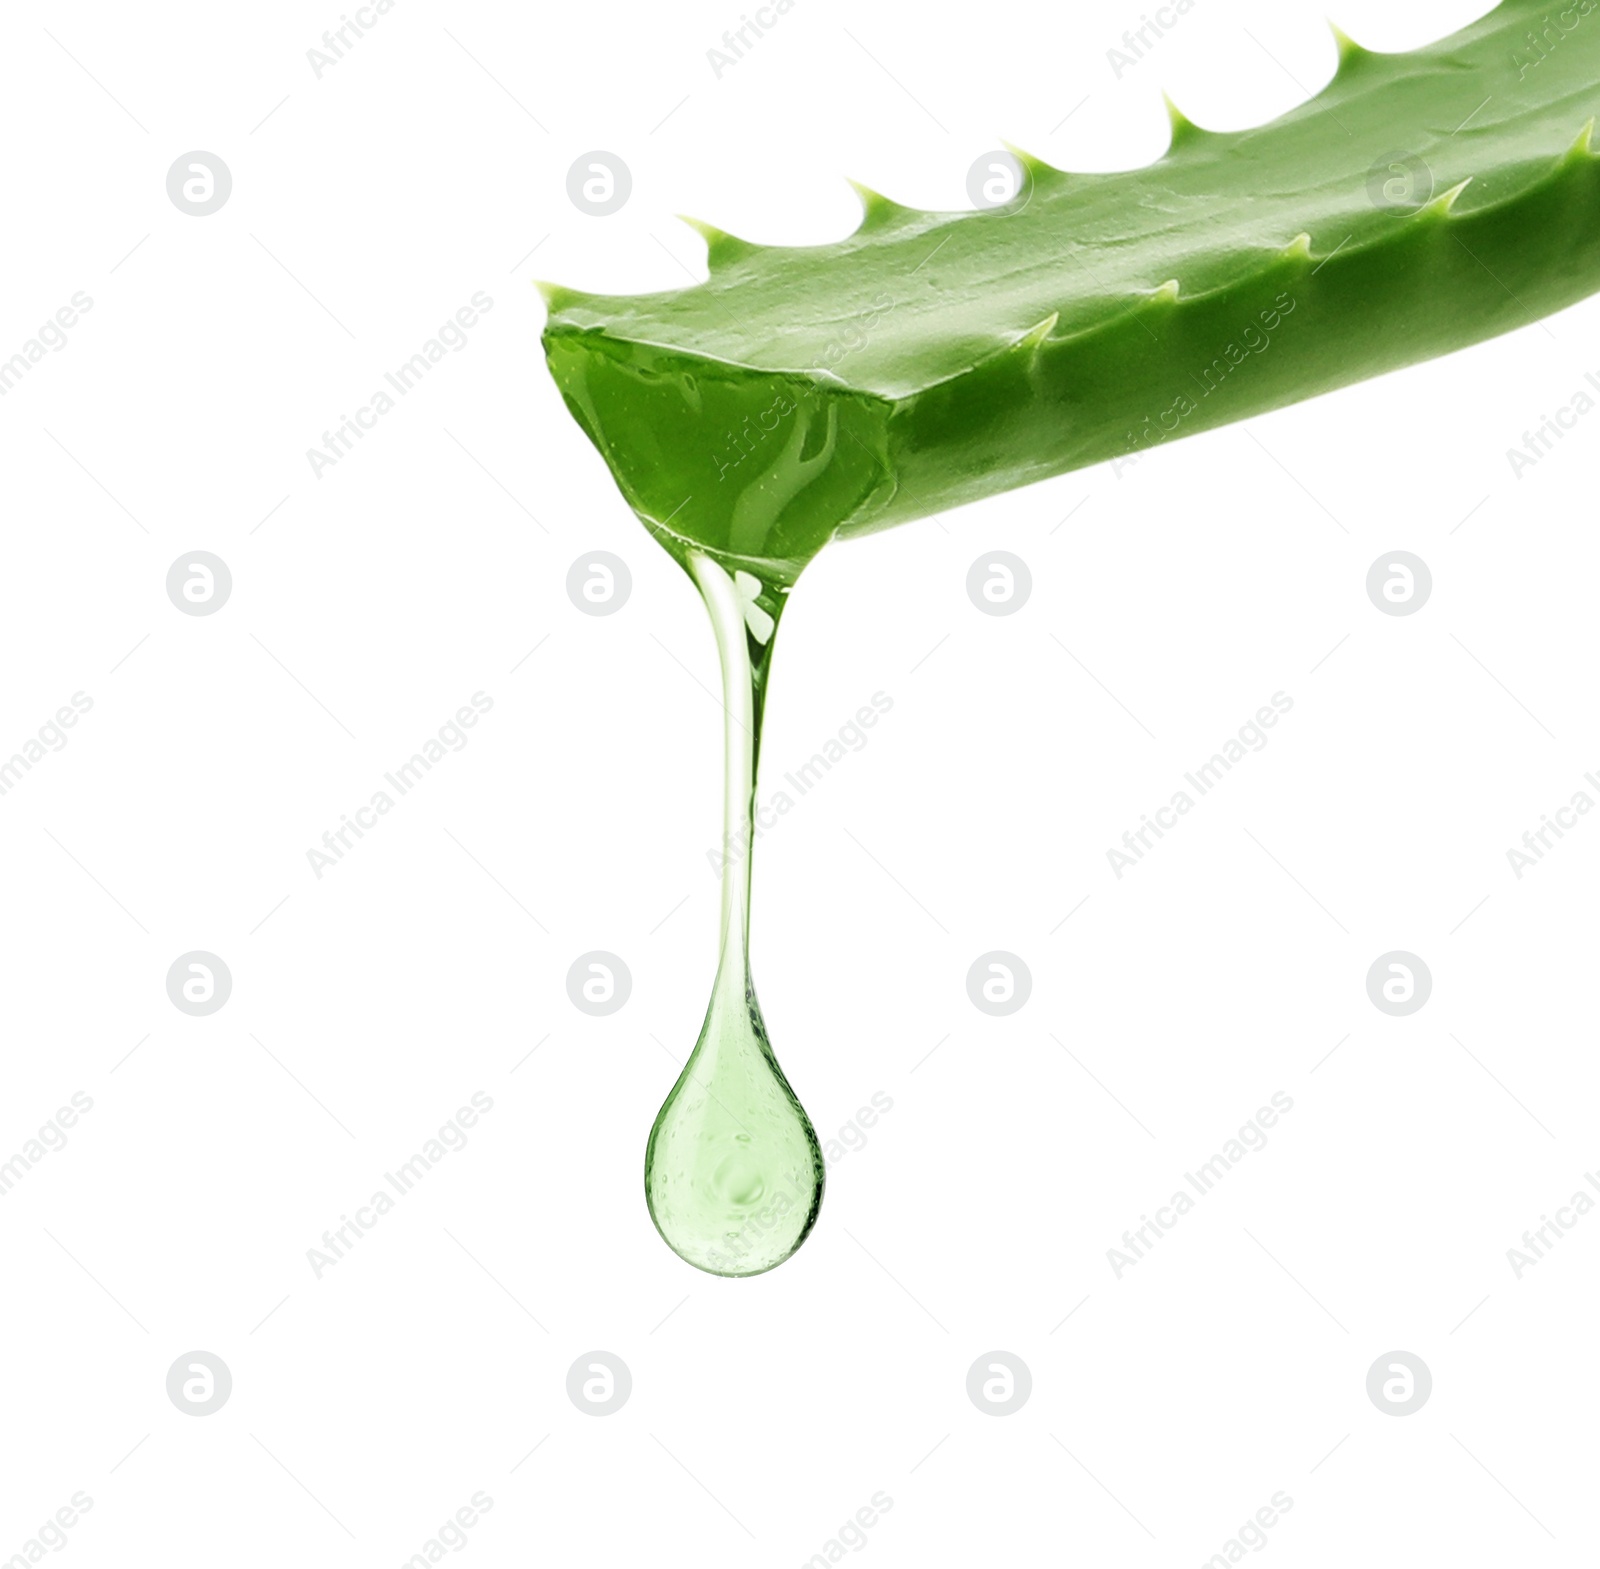 Image of Aloe vera leaf with juice on white background